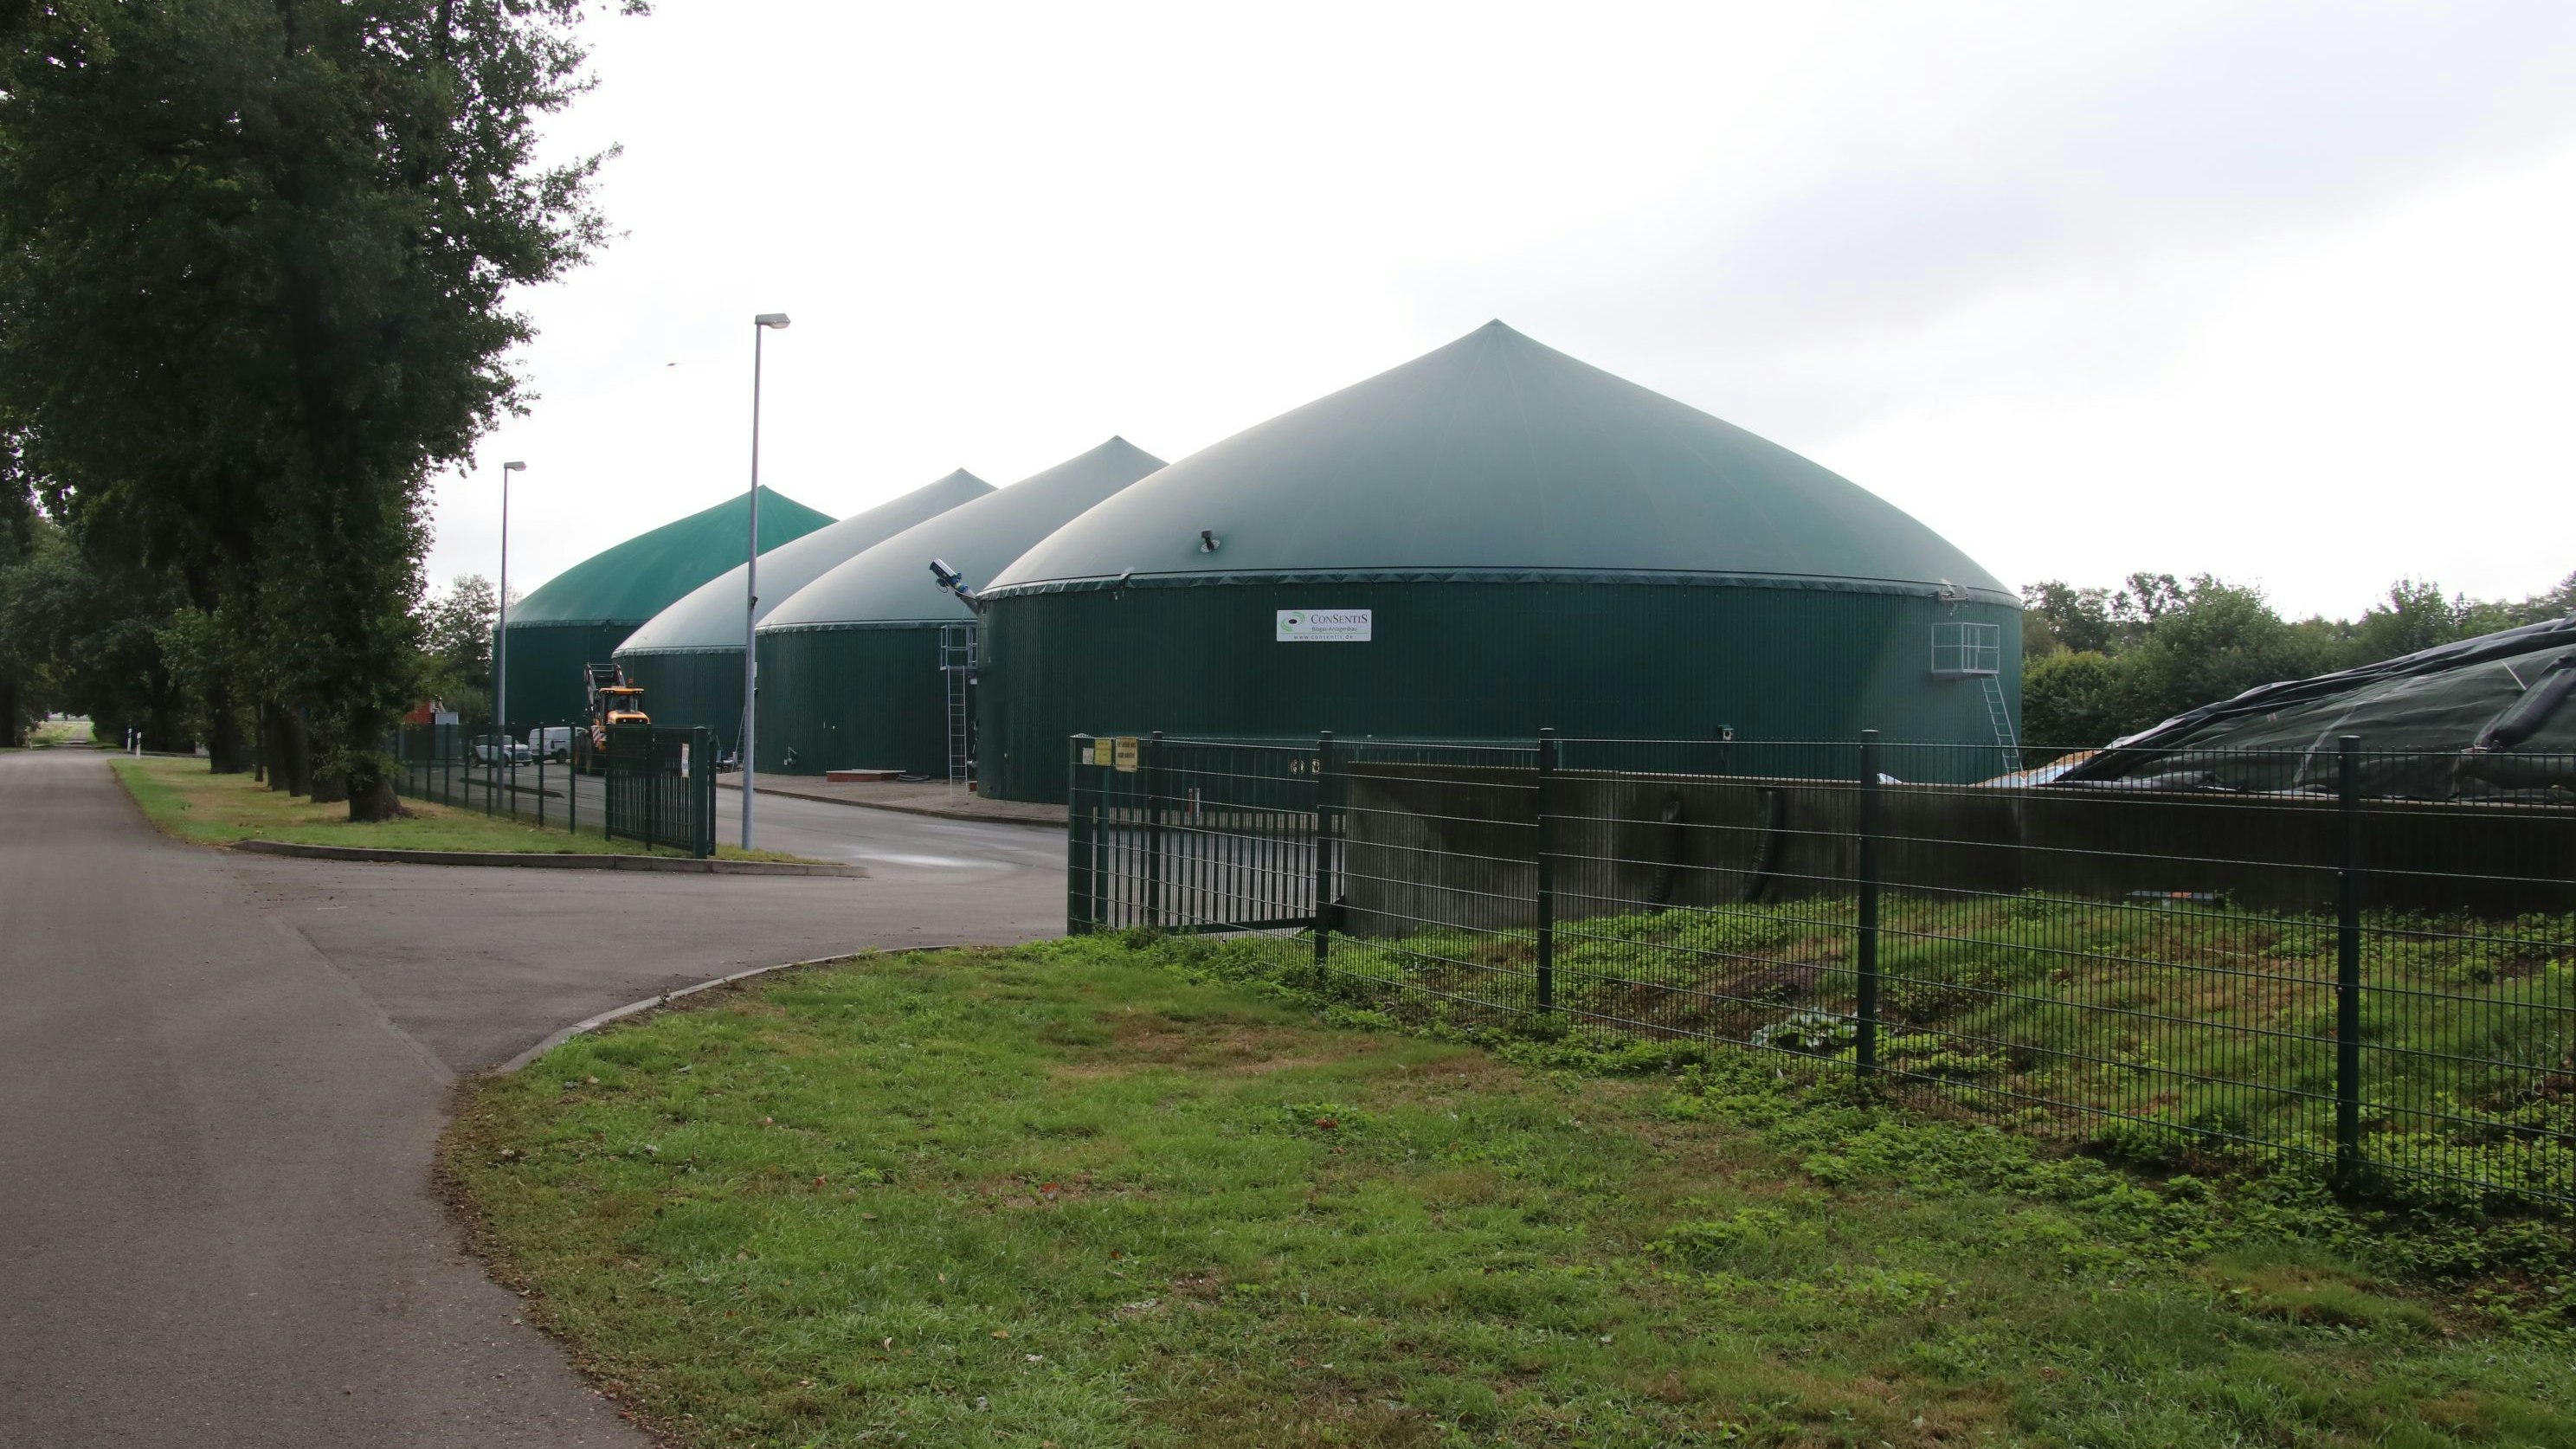 Die Familie Kruthaup will in ihrer Biogasanlage in Osterfeine zukünftig 28.000 statt bislang 18.000 Tonnen an Inputstoffen zu Biogas und Wärme verarbeiten. Foto: Lammert